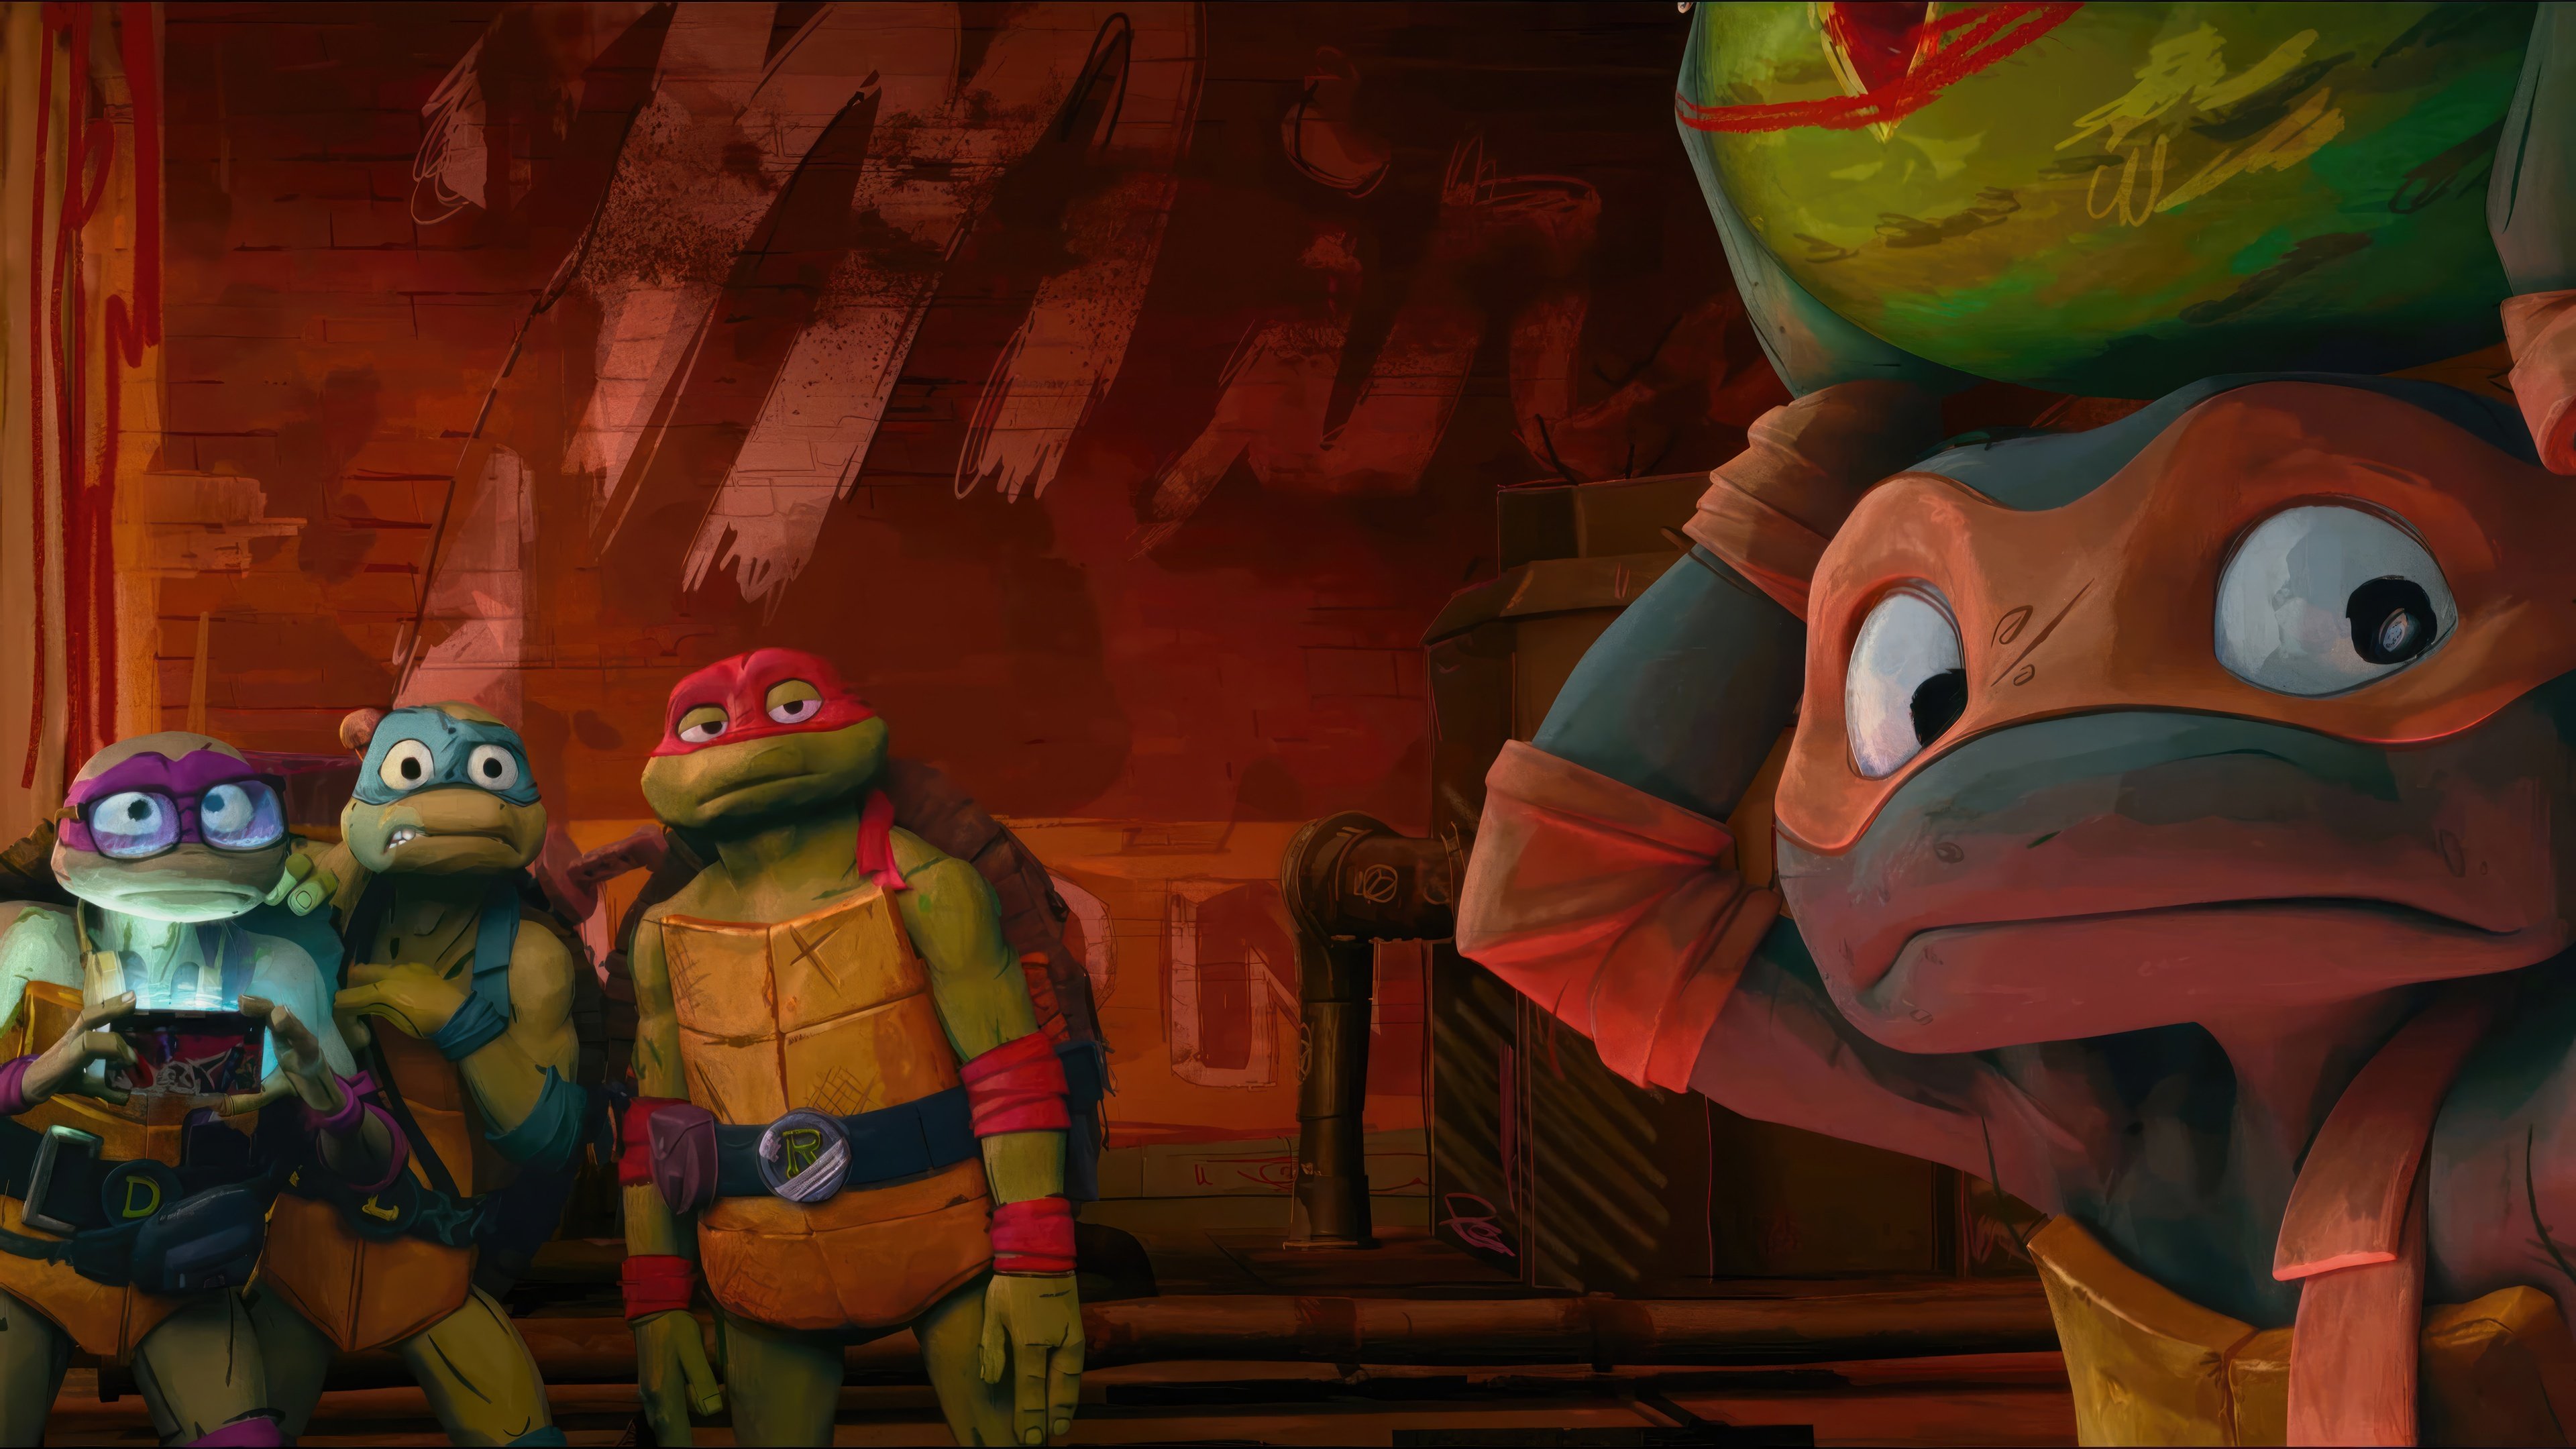 Movie Teenage Mutant Ninja Turtles: Mutant Mayhem 4k Ultra HD